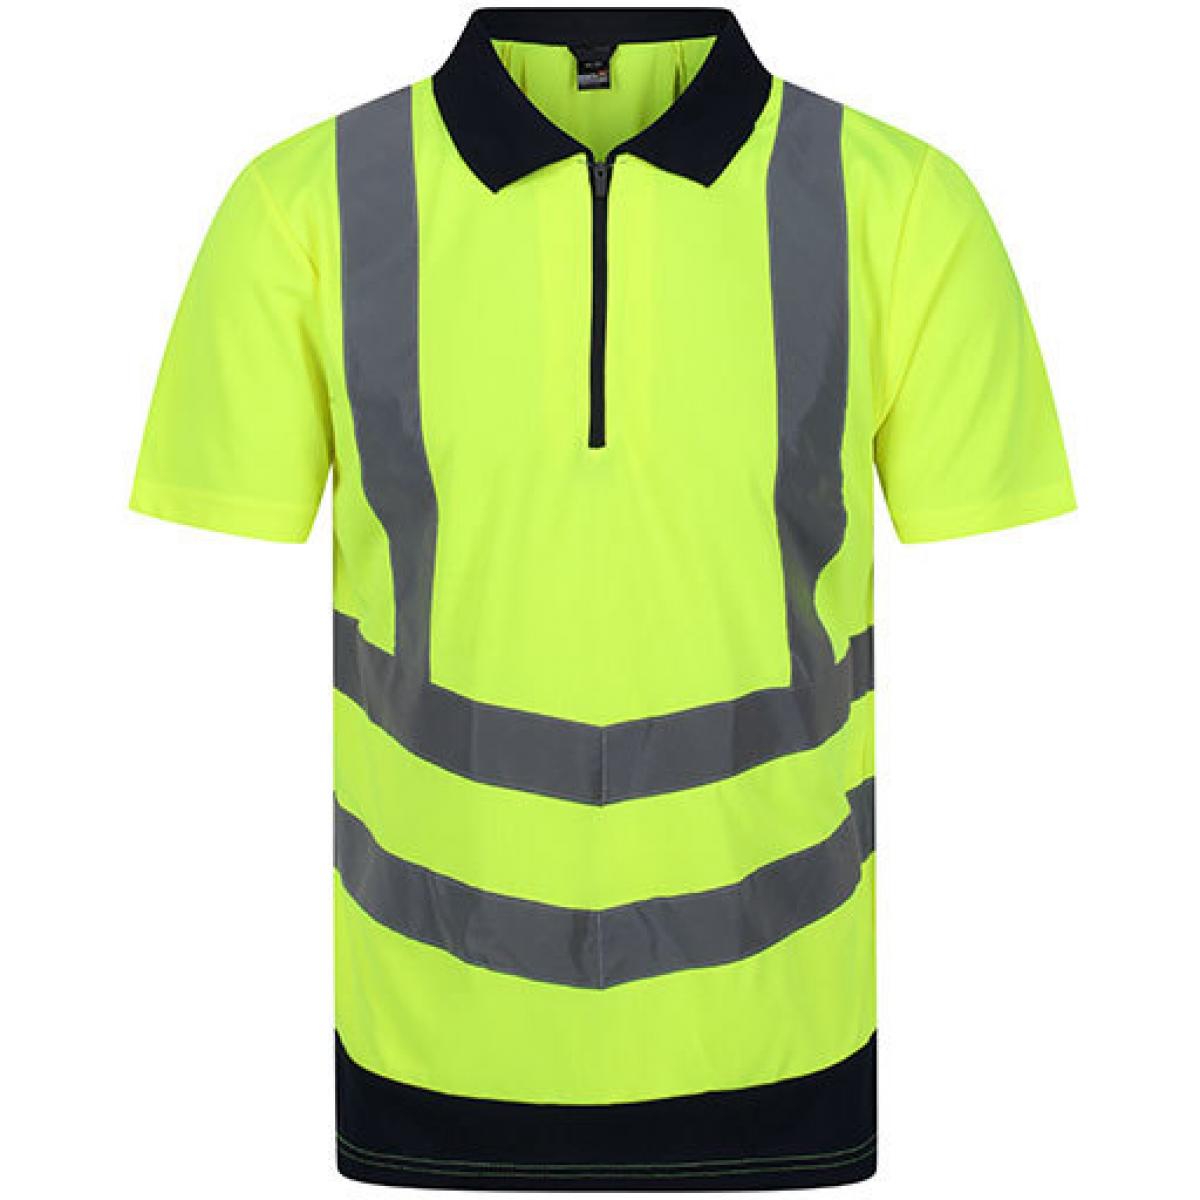 Hersteller: Regatta Herstellernummer: TRS189 Artikelbezeichnung: Herren Hi-Vis Pro Poloshirt, EN20471 Klasse 2 Farbe: Yellow/Navy